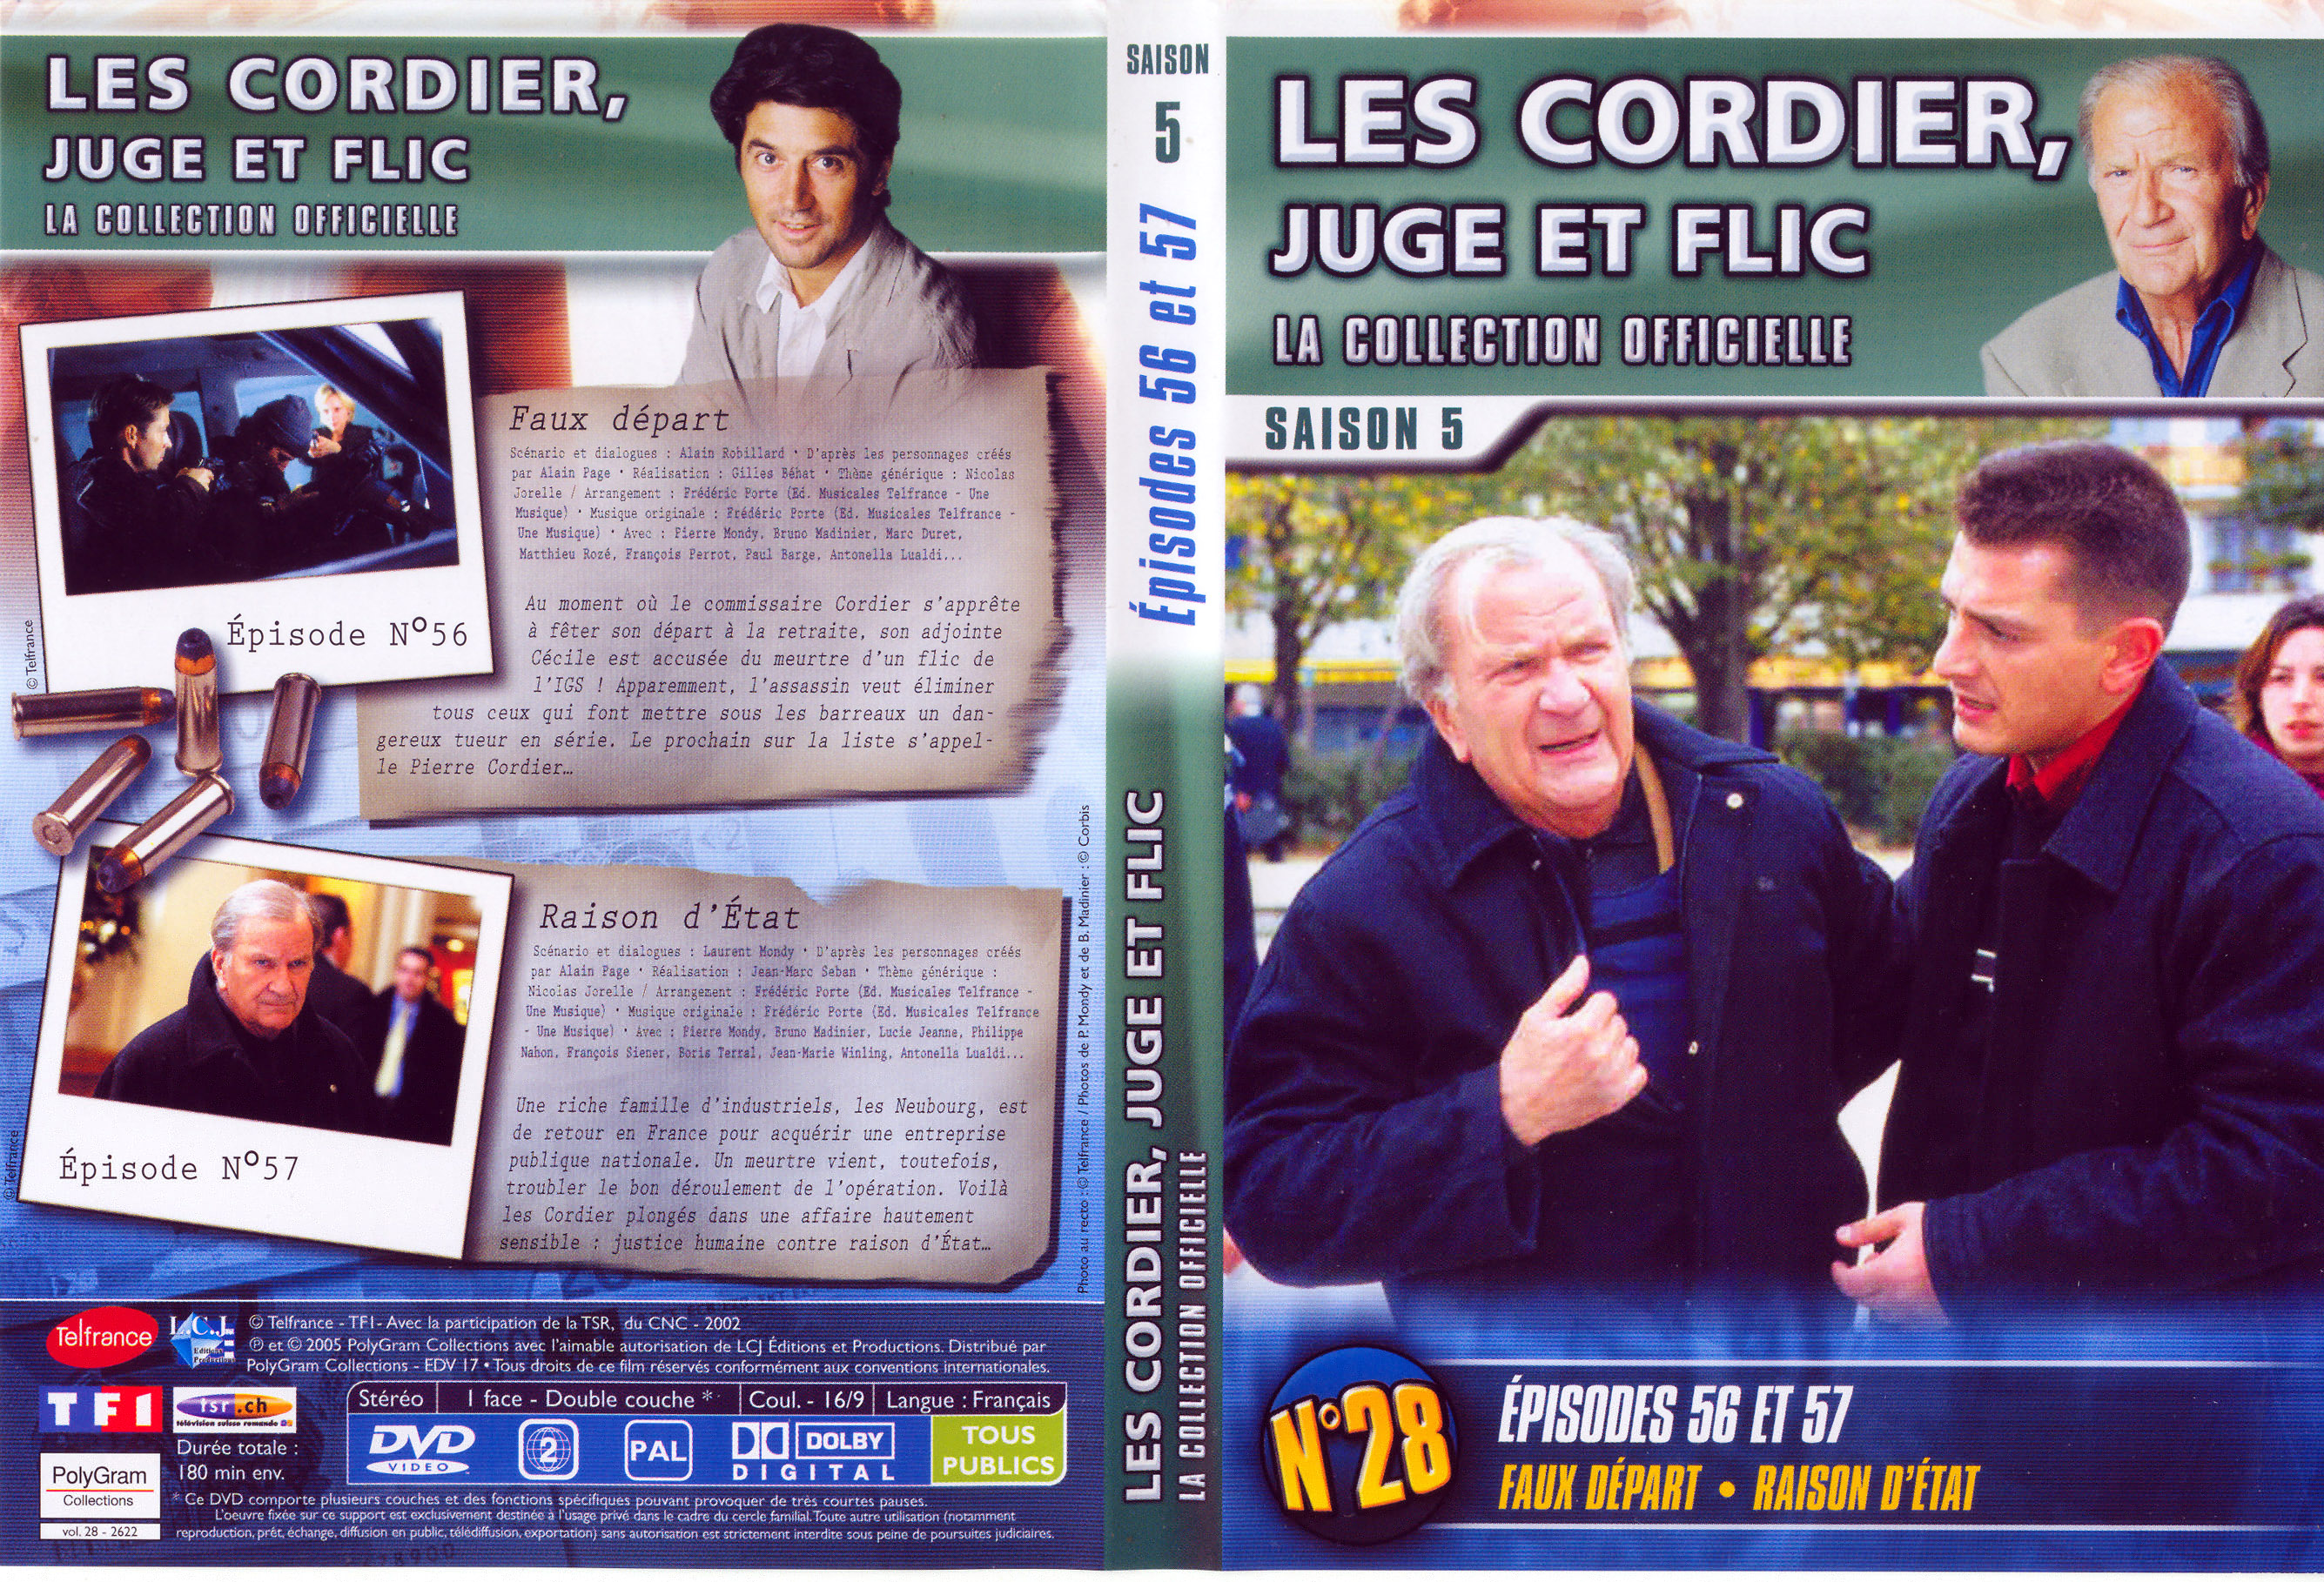 Jaquette DVD Les cordier juge et flic Saison 5 vol 28